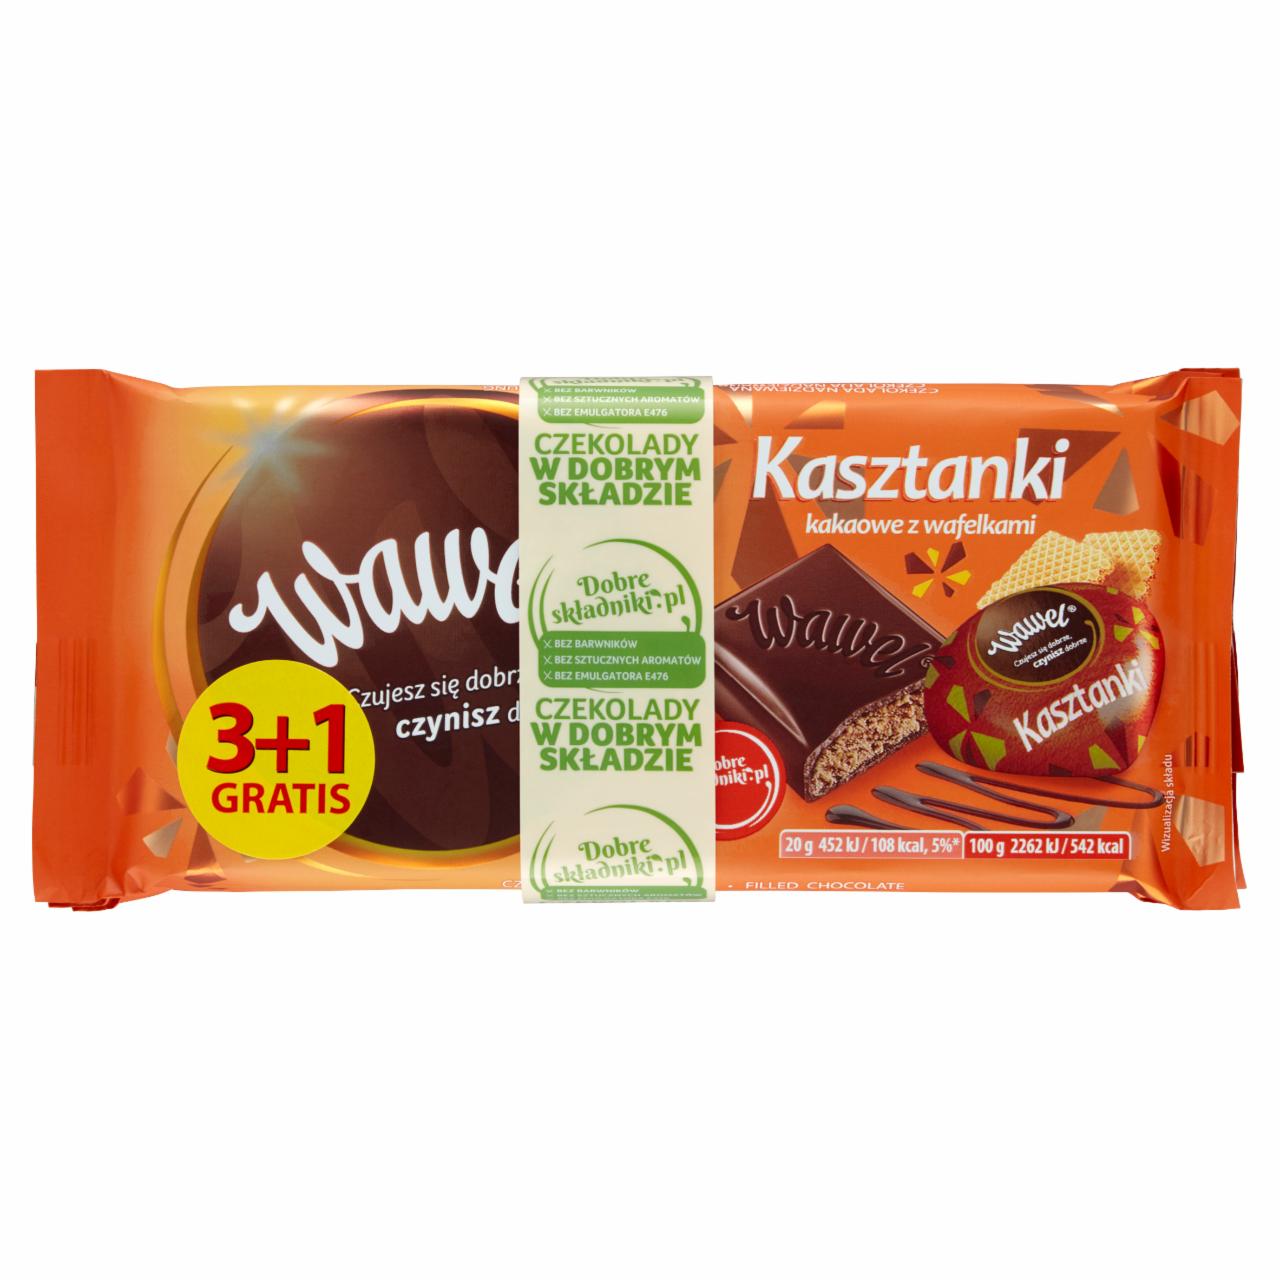 Zdjęcia - Wawel Kasztanki kakaowe z wafelkami Czekolada nadziewana 400 g (4 x 100 g)